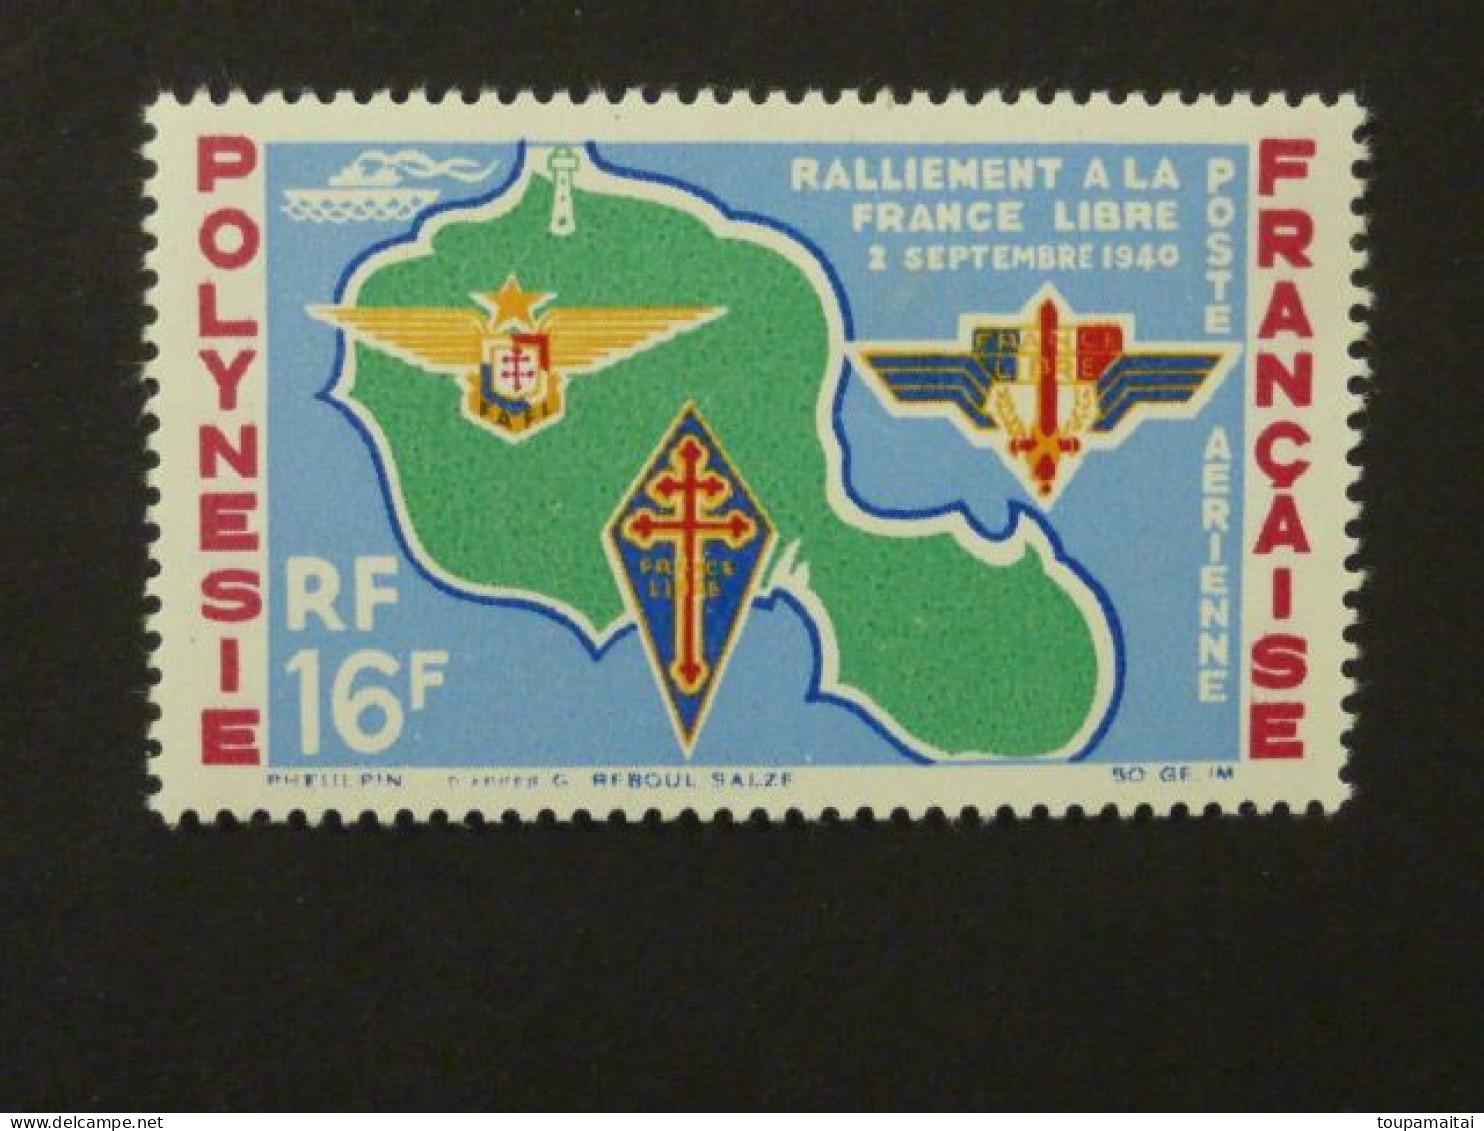 POLYNESIE FRANCAISE, Poste Aérienne, Année 1964, YT N° 8 Neuf MH, Ralliement à La France Libre Le 2 Septembre 1940 - Ongebruikt